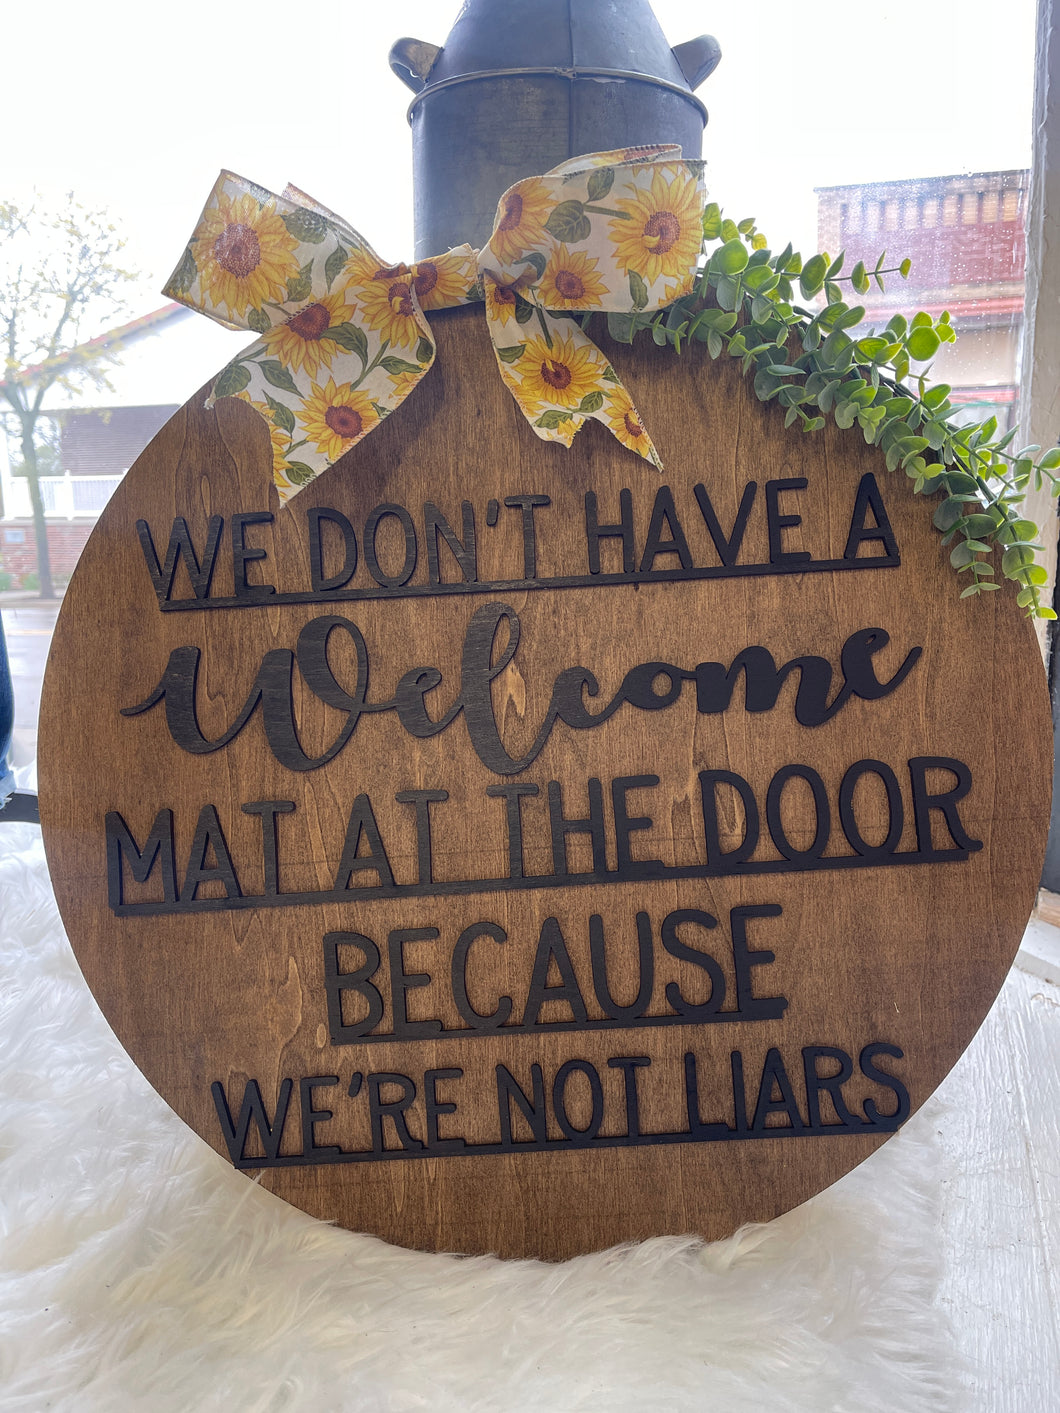 We don’t have a welcome mat at the door bc we’re not liars door hanger